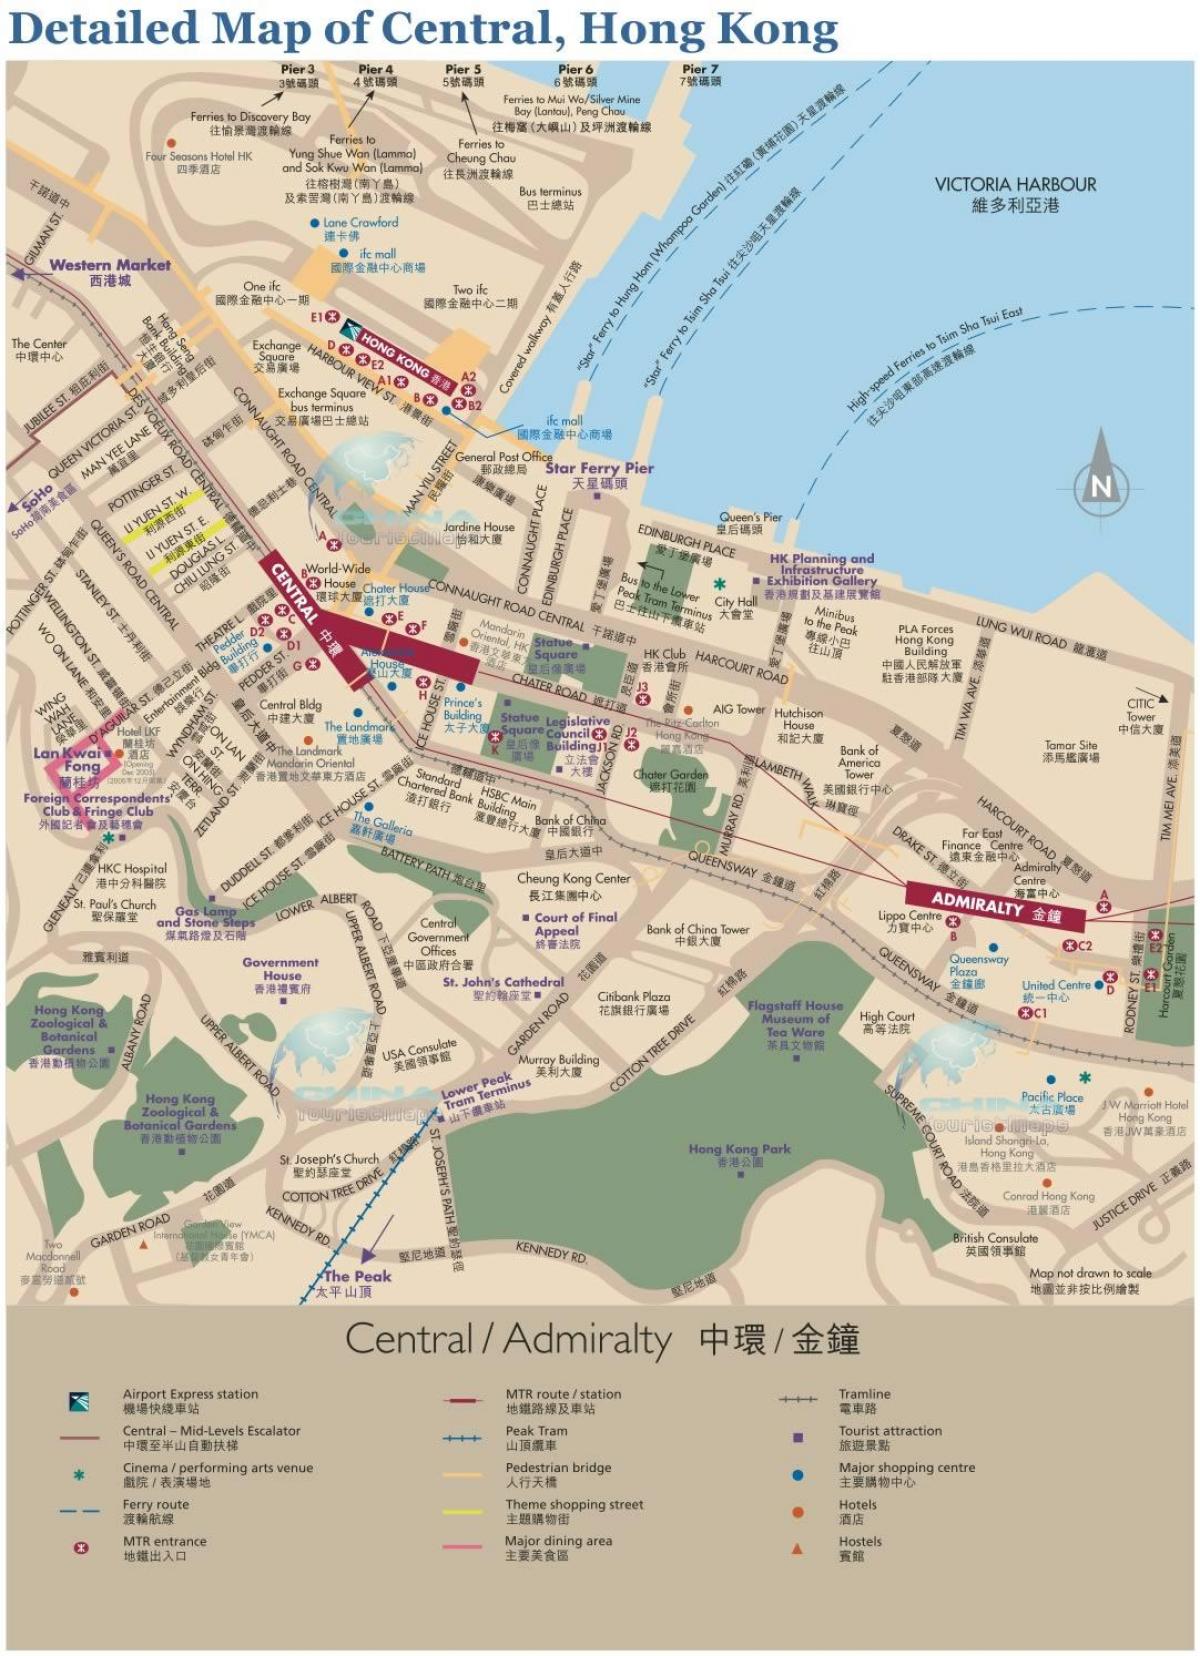 הונג קונג במרכז המפה